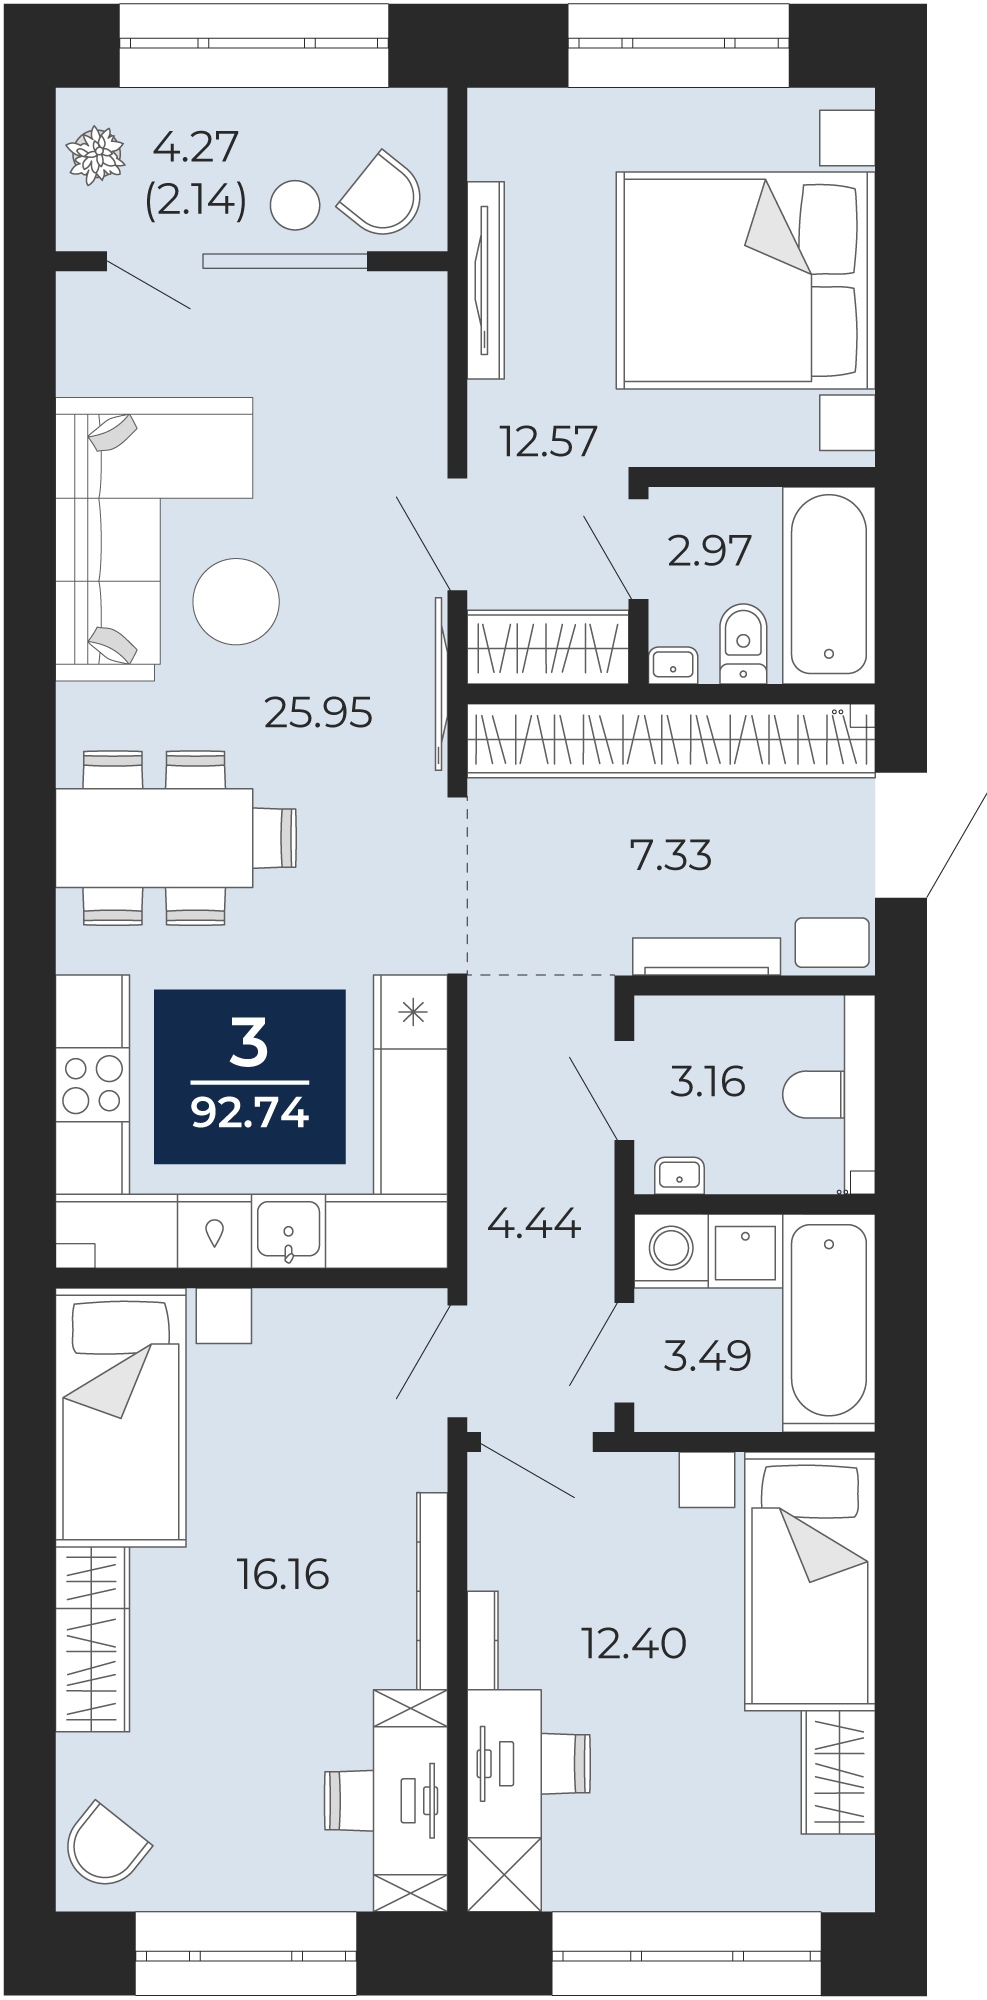 Квартира № 149, 3-комнатная, 92.74 кв. м, 5 этаж